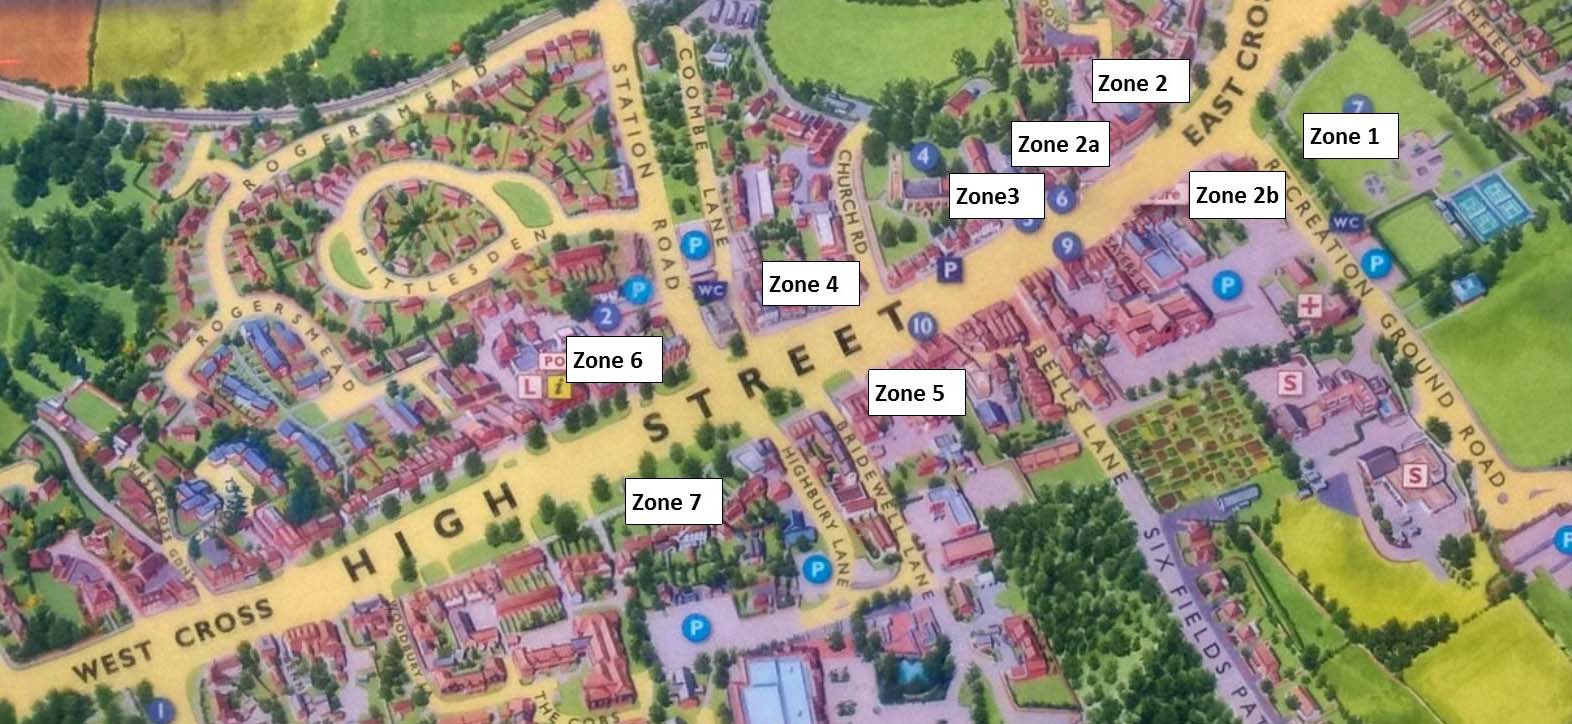 Tenterden High Street Map Zones 